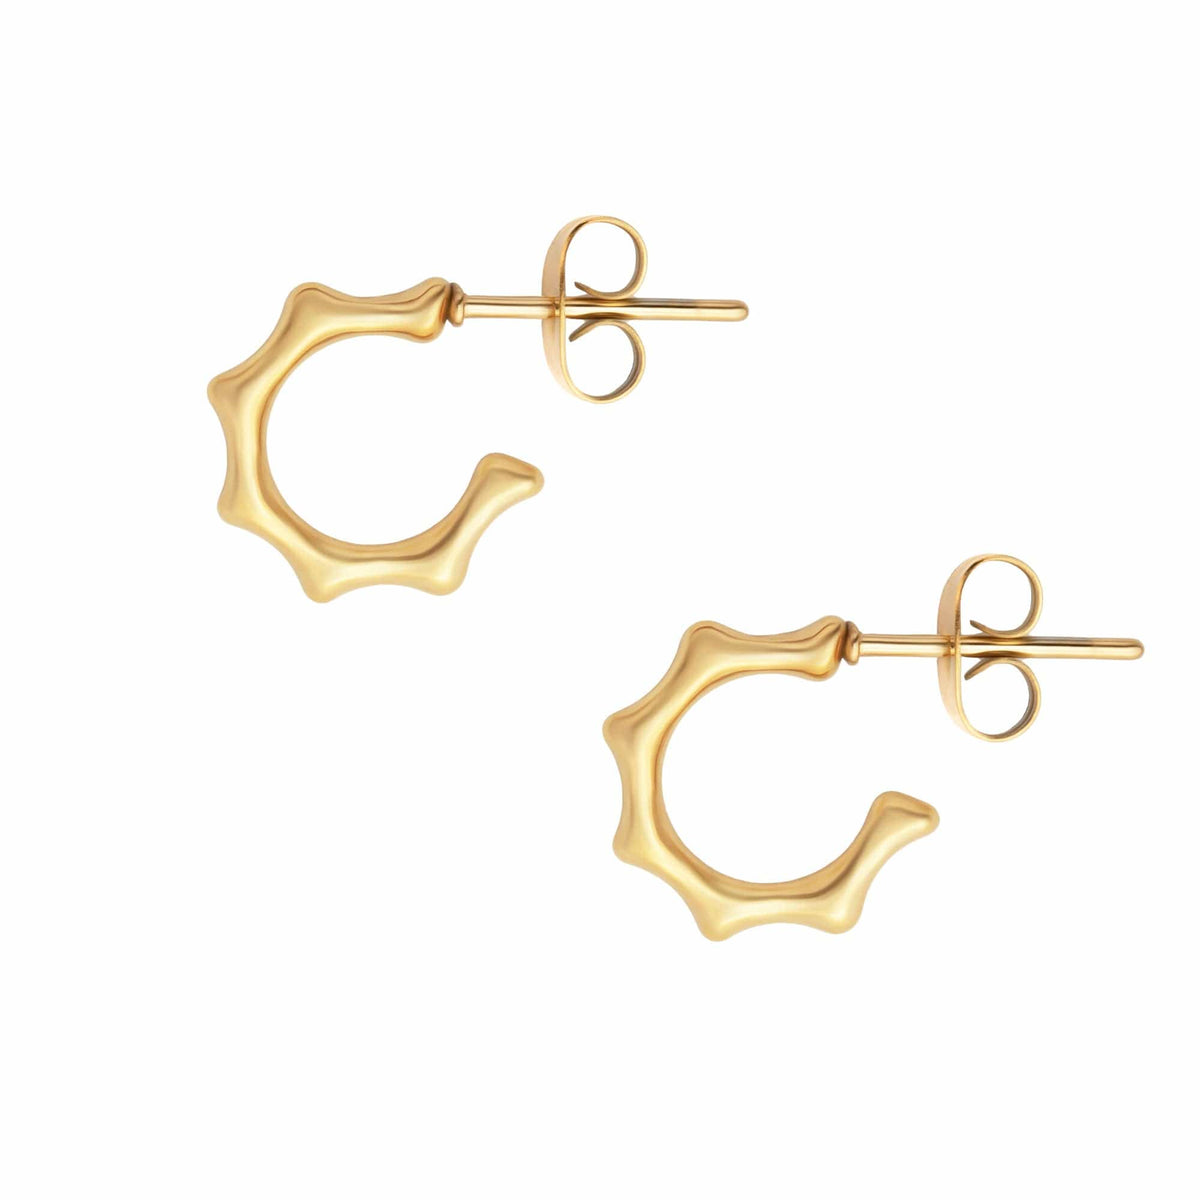 BohoMoon Stainless Steel Nyla Hoop Earrings Gold